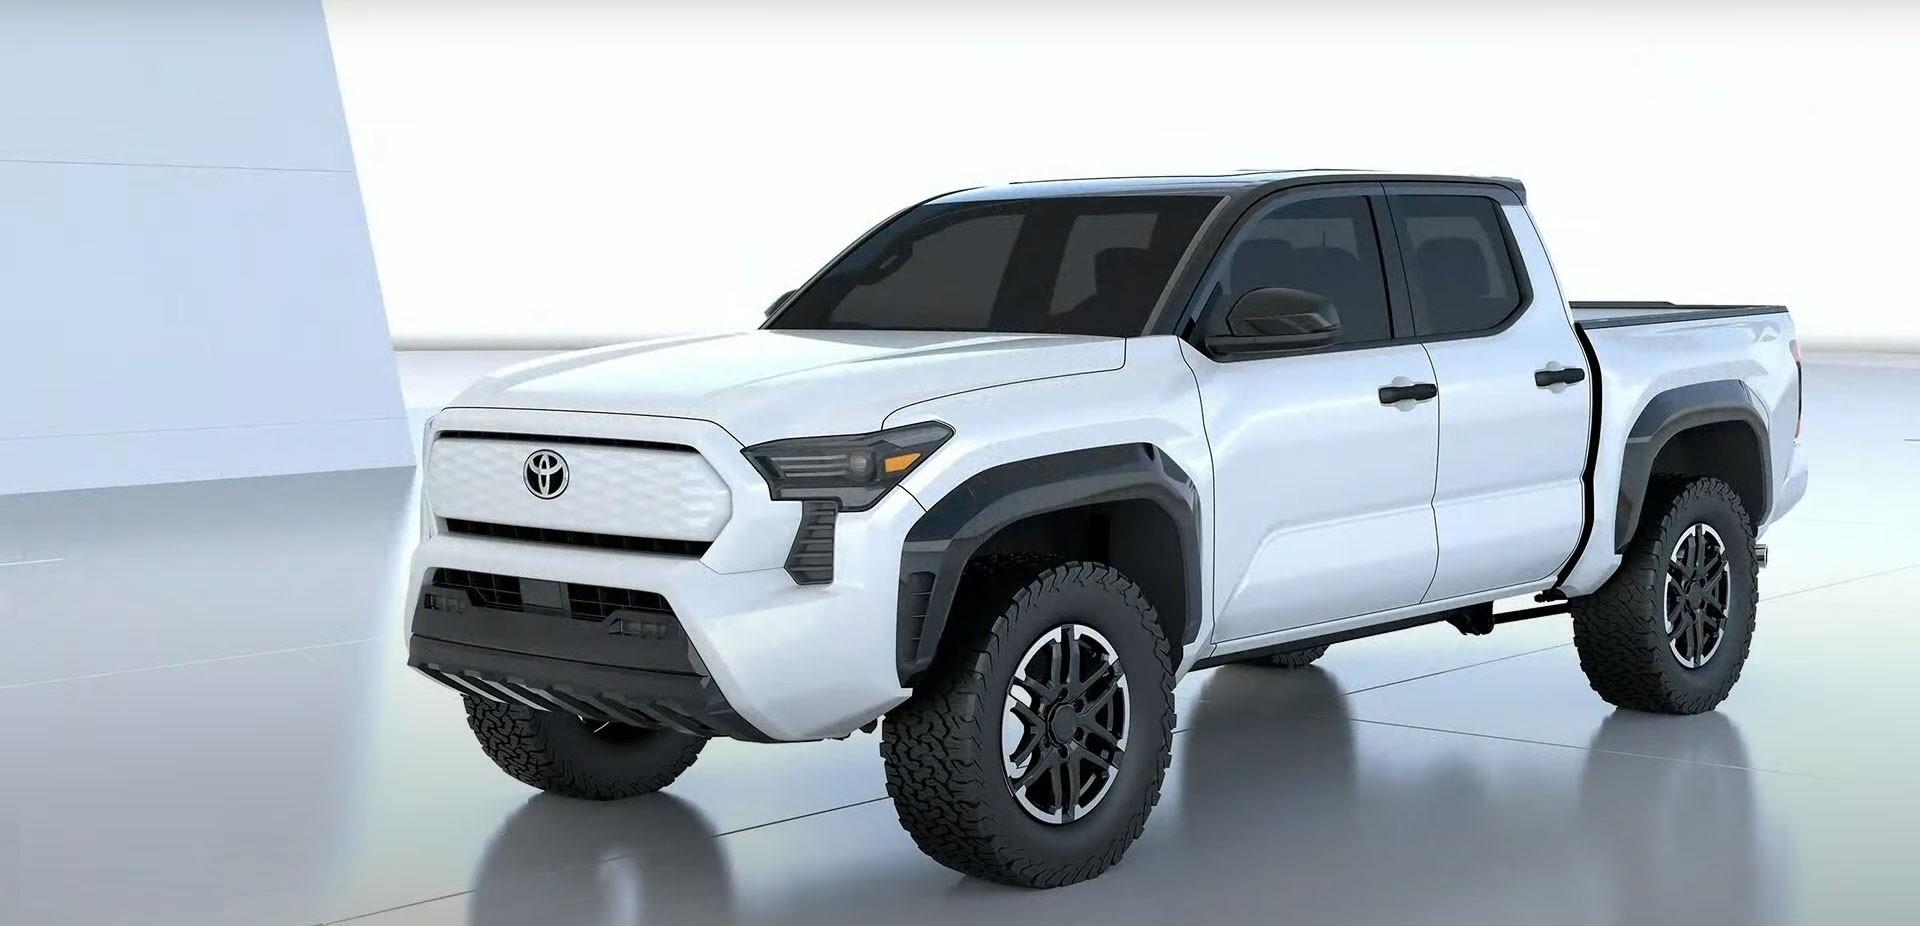 Toyota Tacoma lộ thiết kế thế hệ mới, có thể là bản xem trước cho Hilux - Ảnh 1.